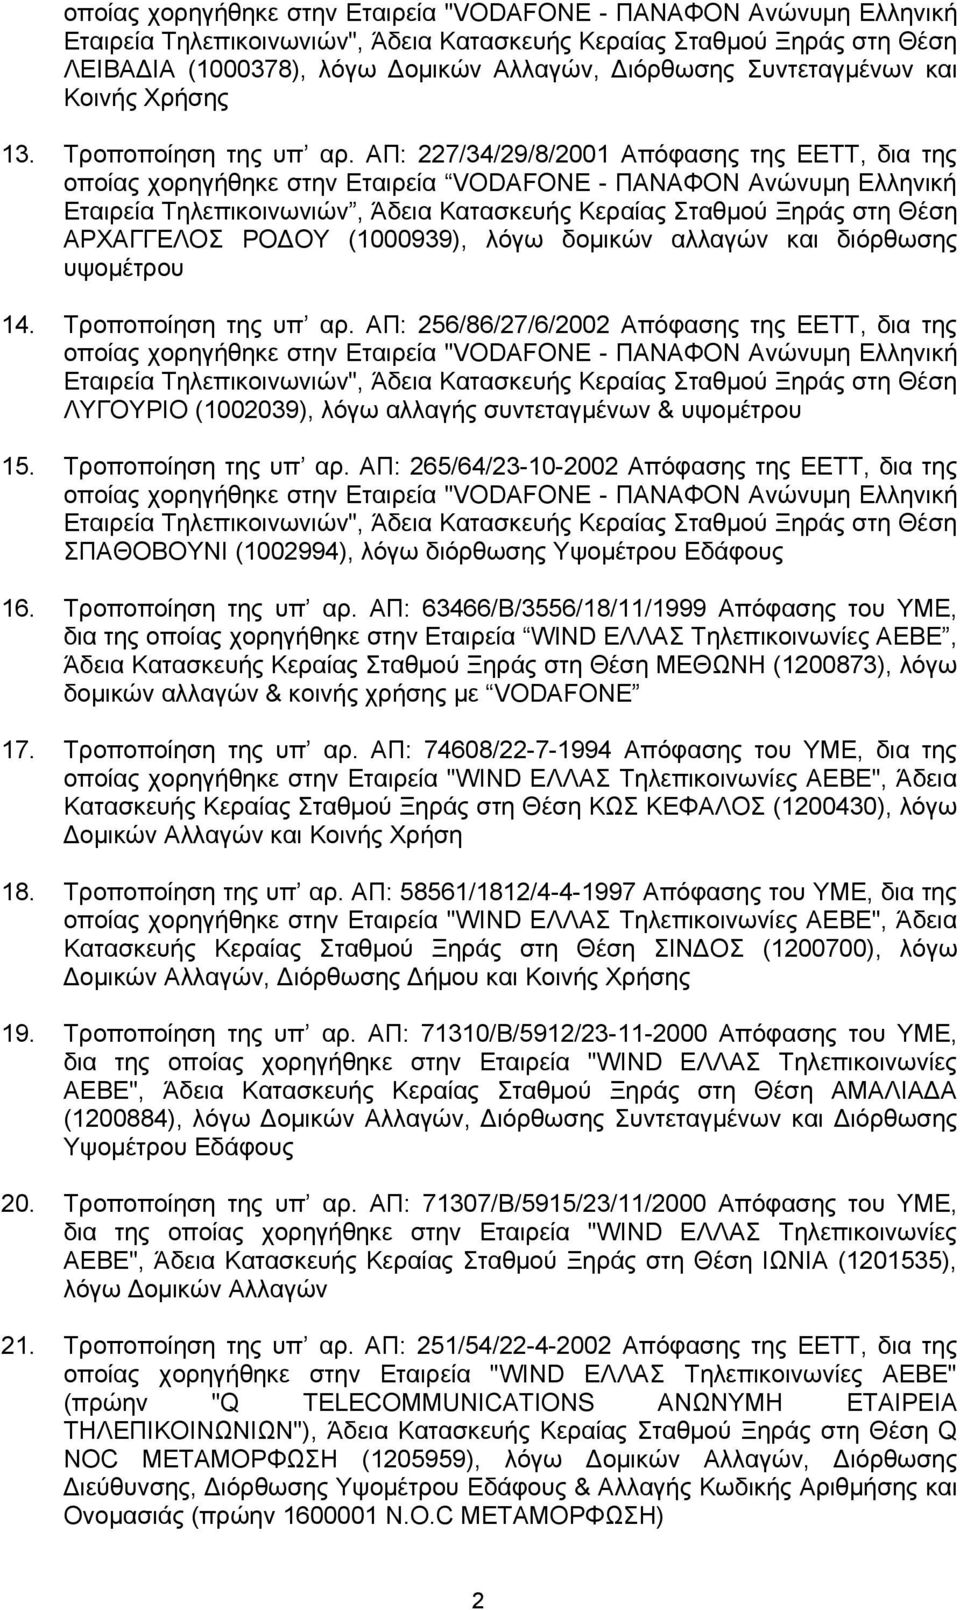 ΑΠ: 227/34/29/8/2001 Απόφασης της ΕΕΤΤ, δια της οποίας χορηγήθηκε στην Εταιρεία VODAFONE - ΠΑΝΑΦΟΝ Ανώνυμη Ελληνική Εταιρεία Τηλεπικοινωνιών, Άδεια Κατασκευής Κεραίας Σταθμού Ξηράς στη Θέση